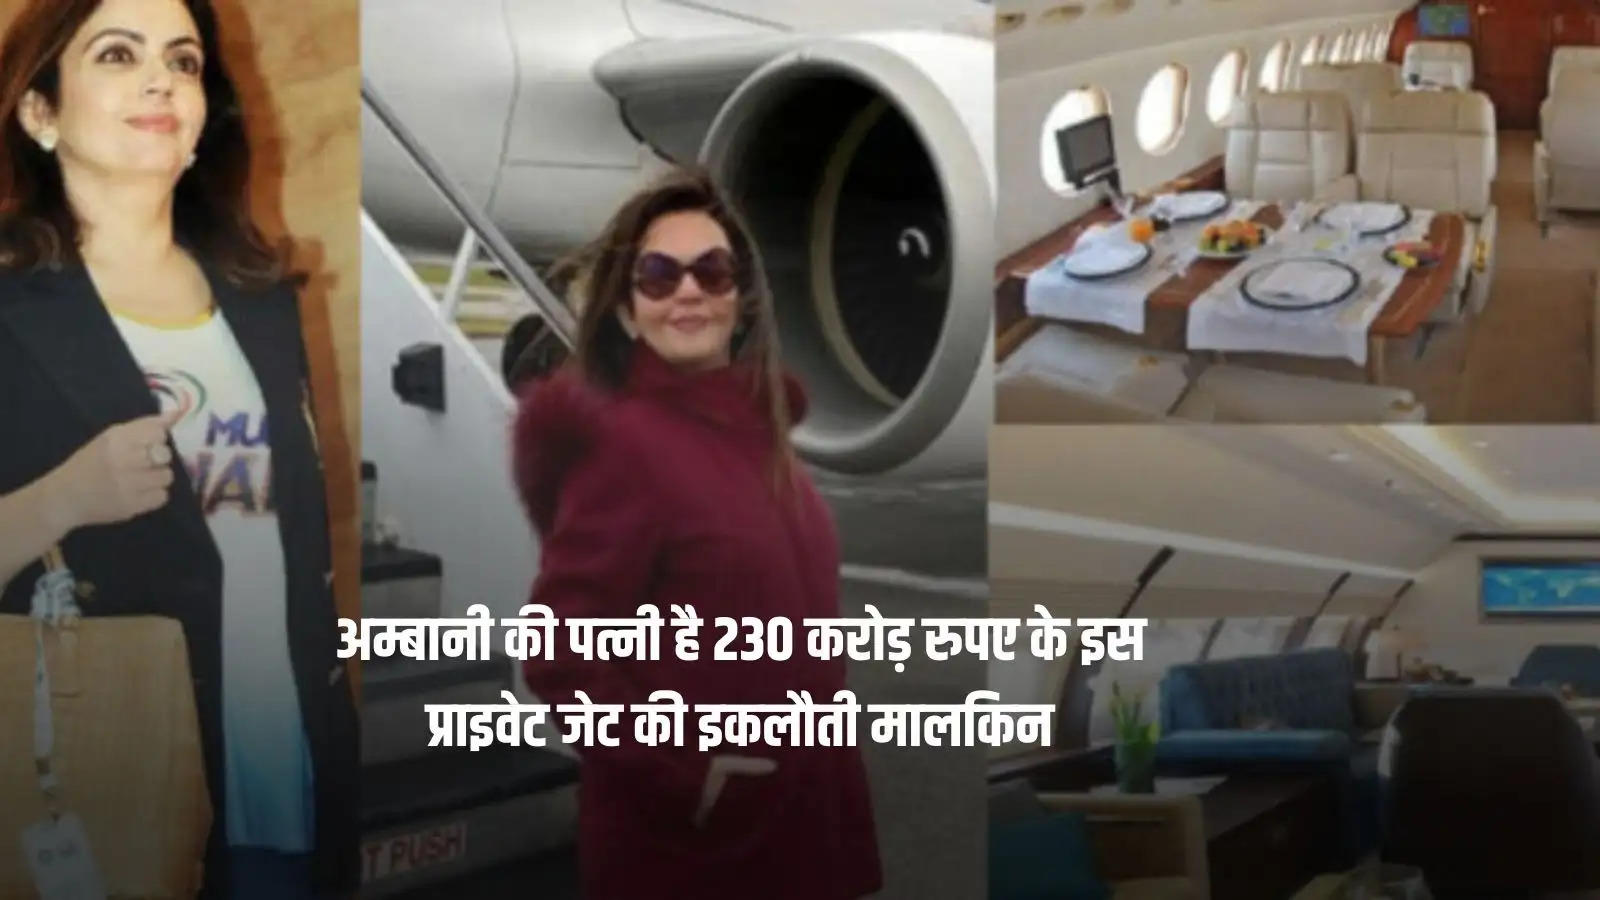 अम्बानी की पत्नी है 230 करोड़ रुपए के इस प्राइवेट जेट की इकलौती मालकिन